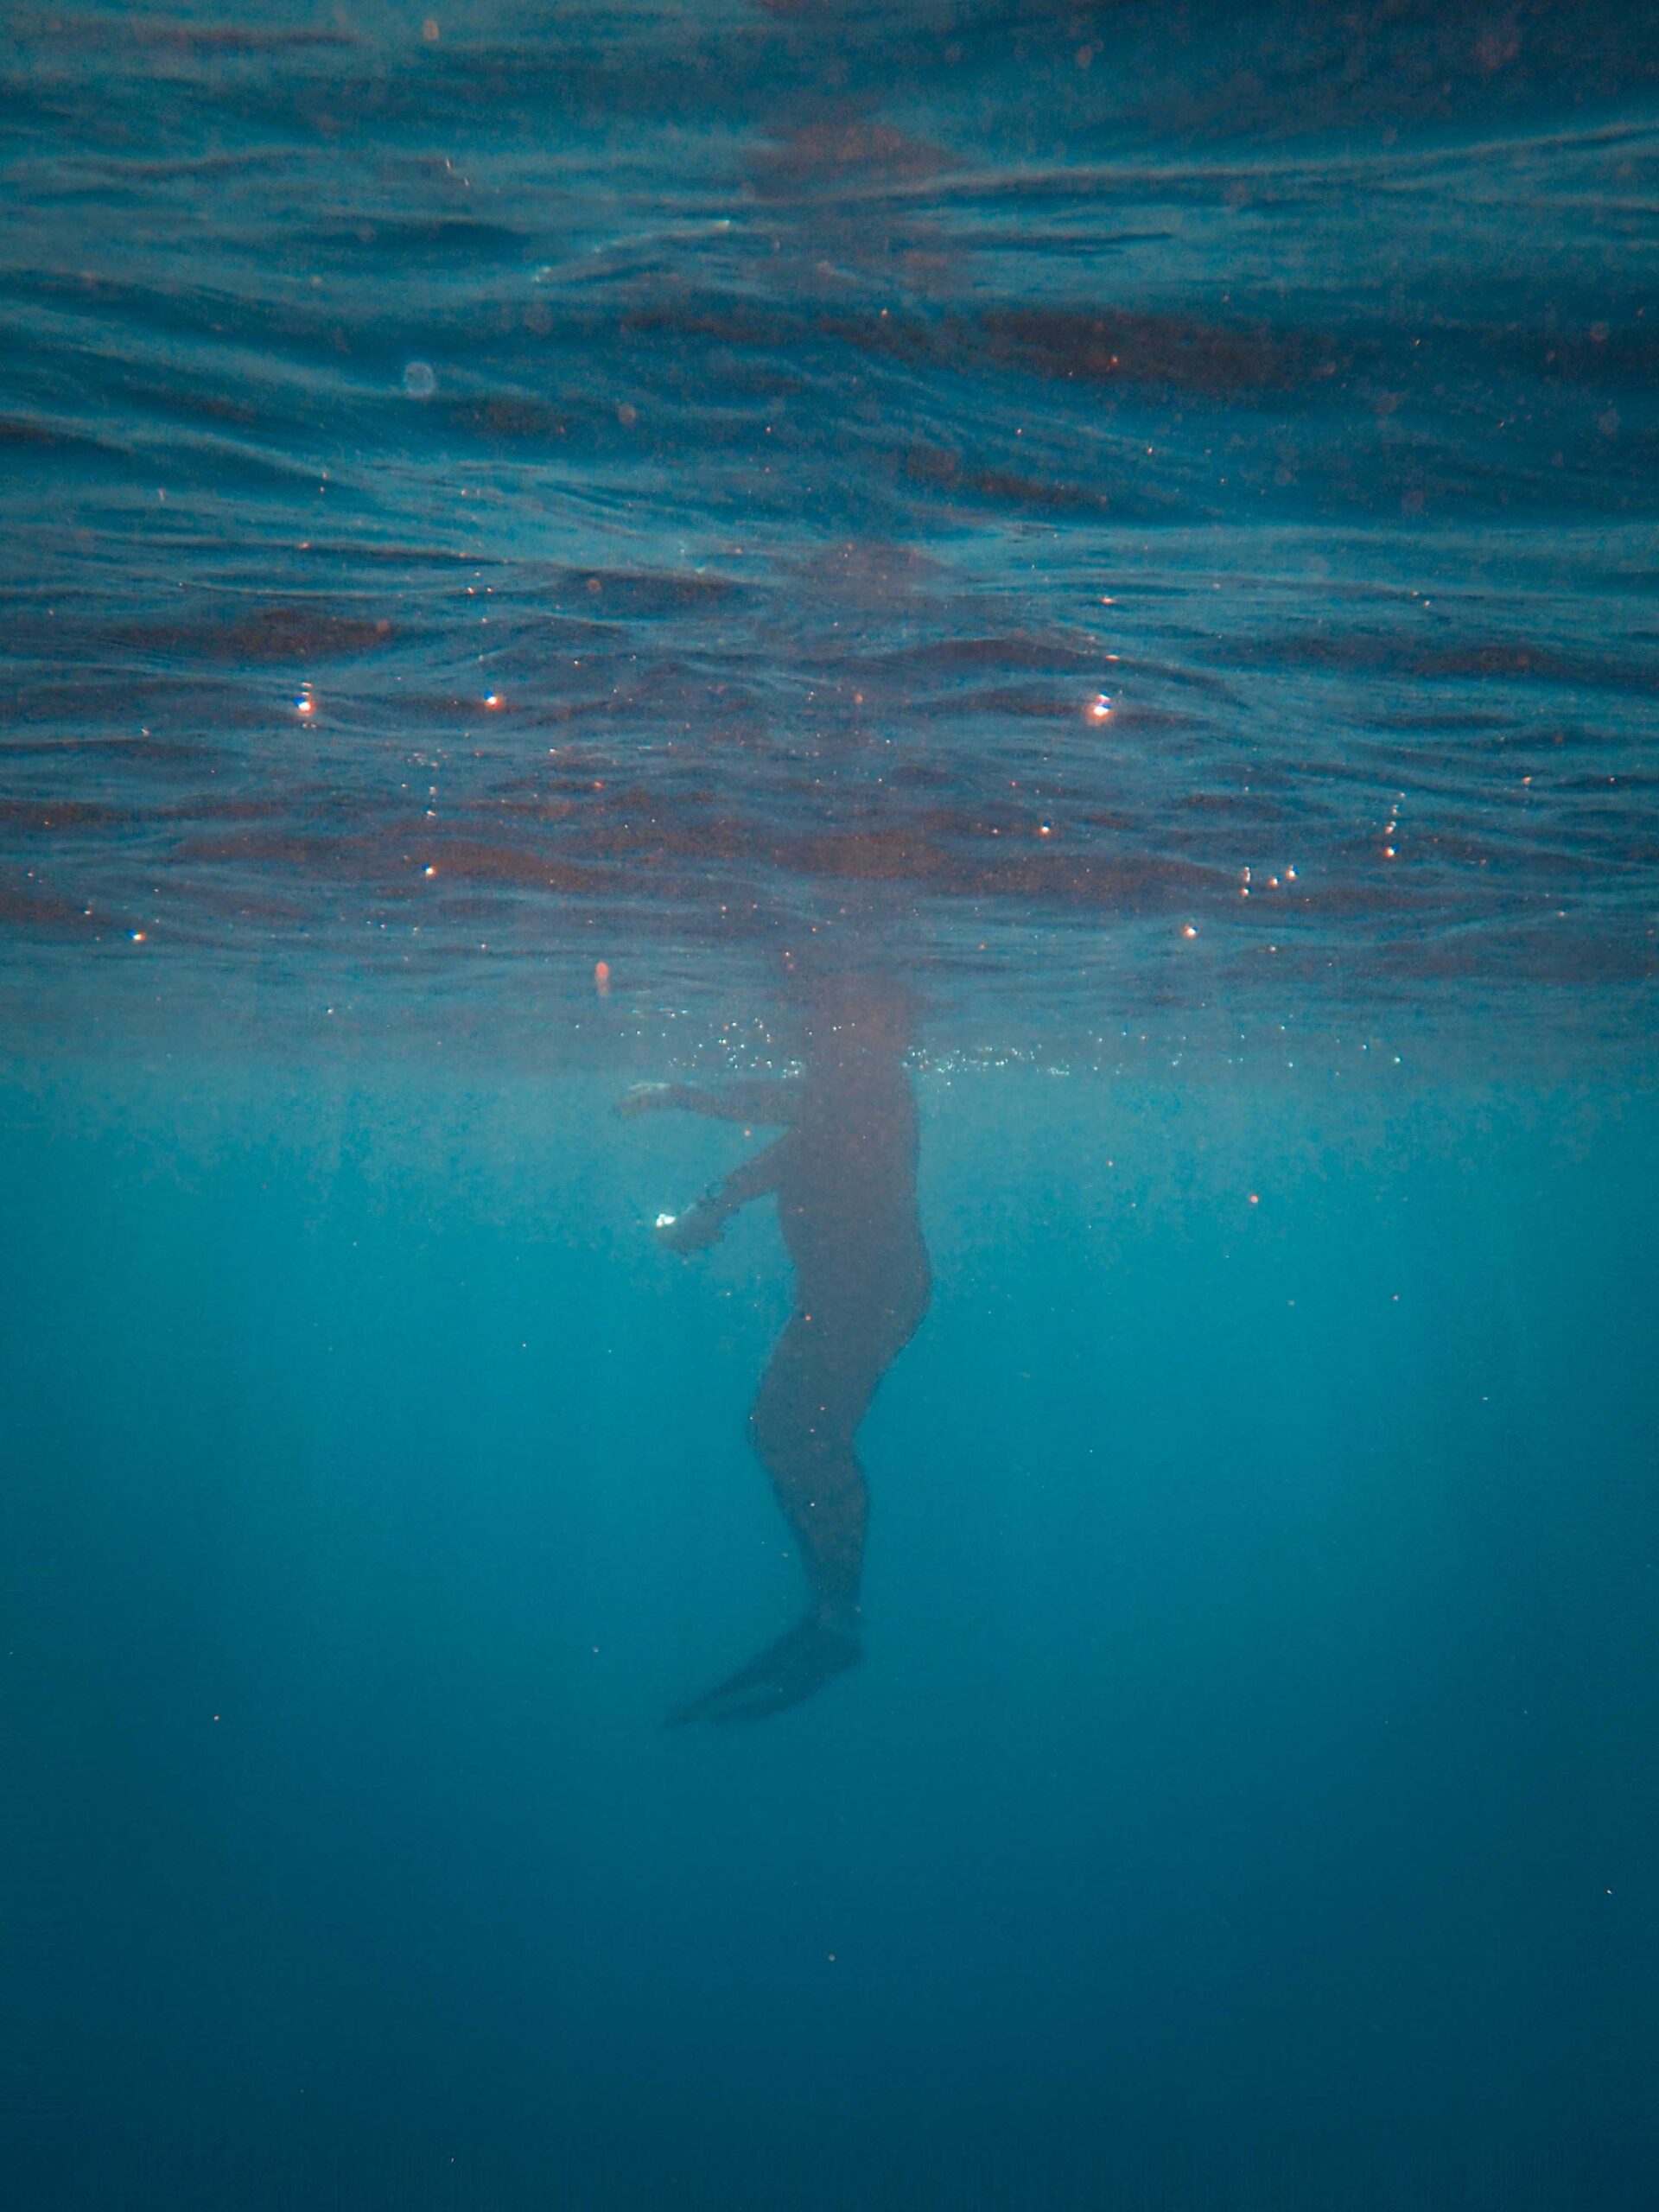 Oehlala! Gordon Ramsay plaatst zwembroekfoto op Instagram en mensen weten niet wat ze zien